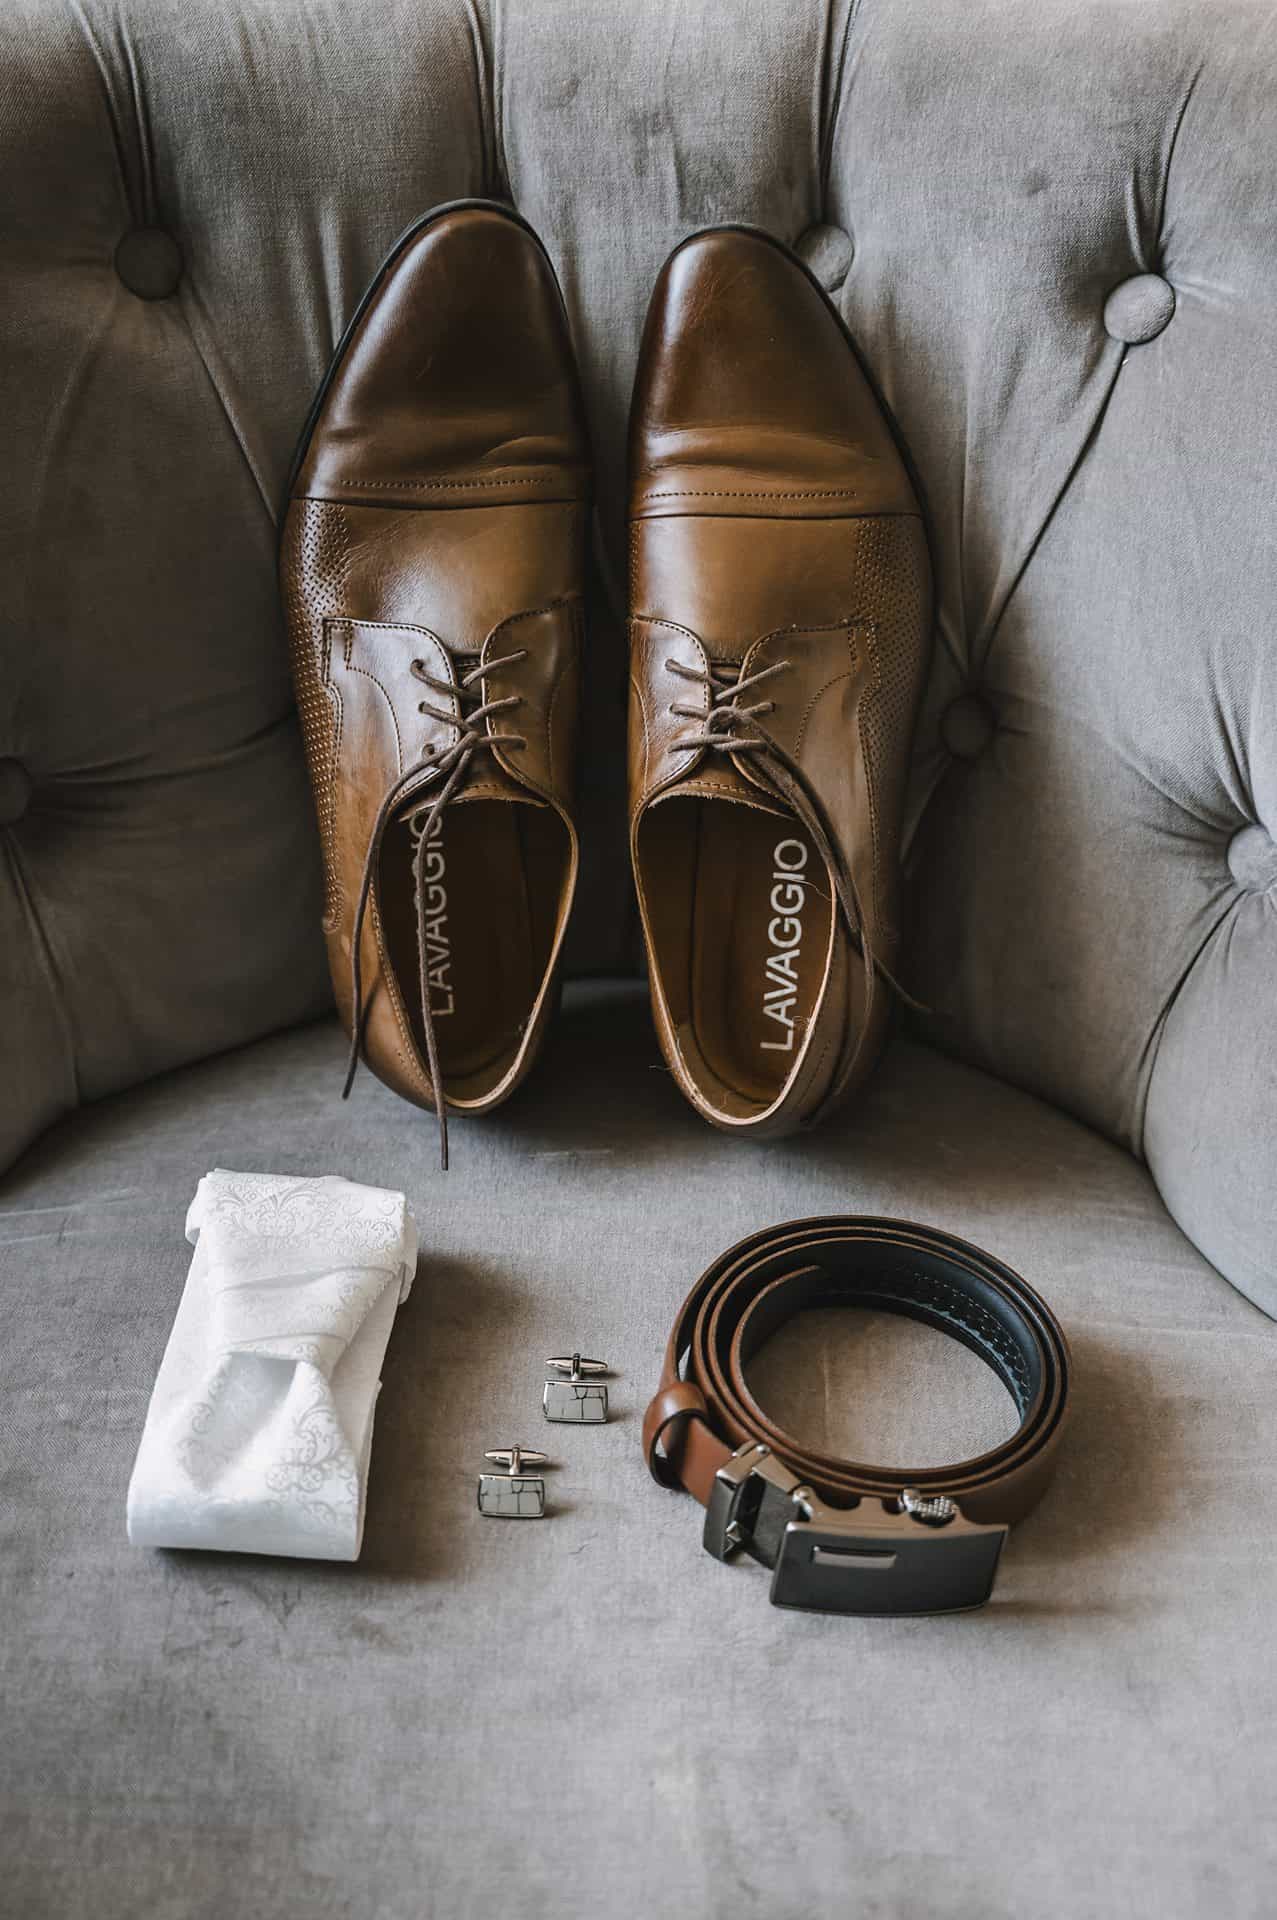 Ein Paar braune Schuhe und eine Krawatte auf einer Couch.